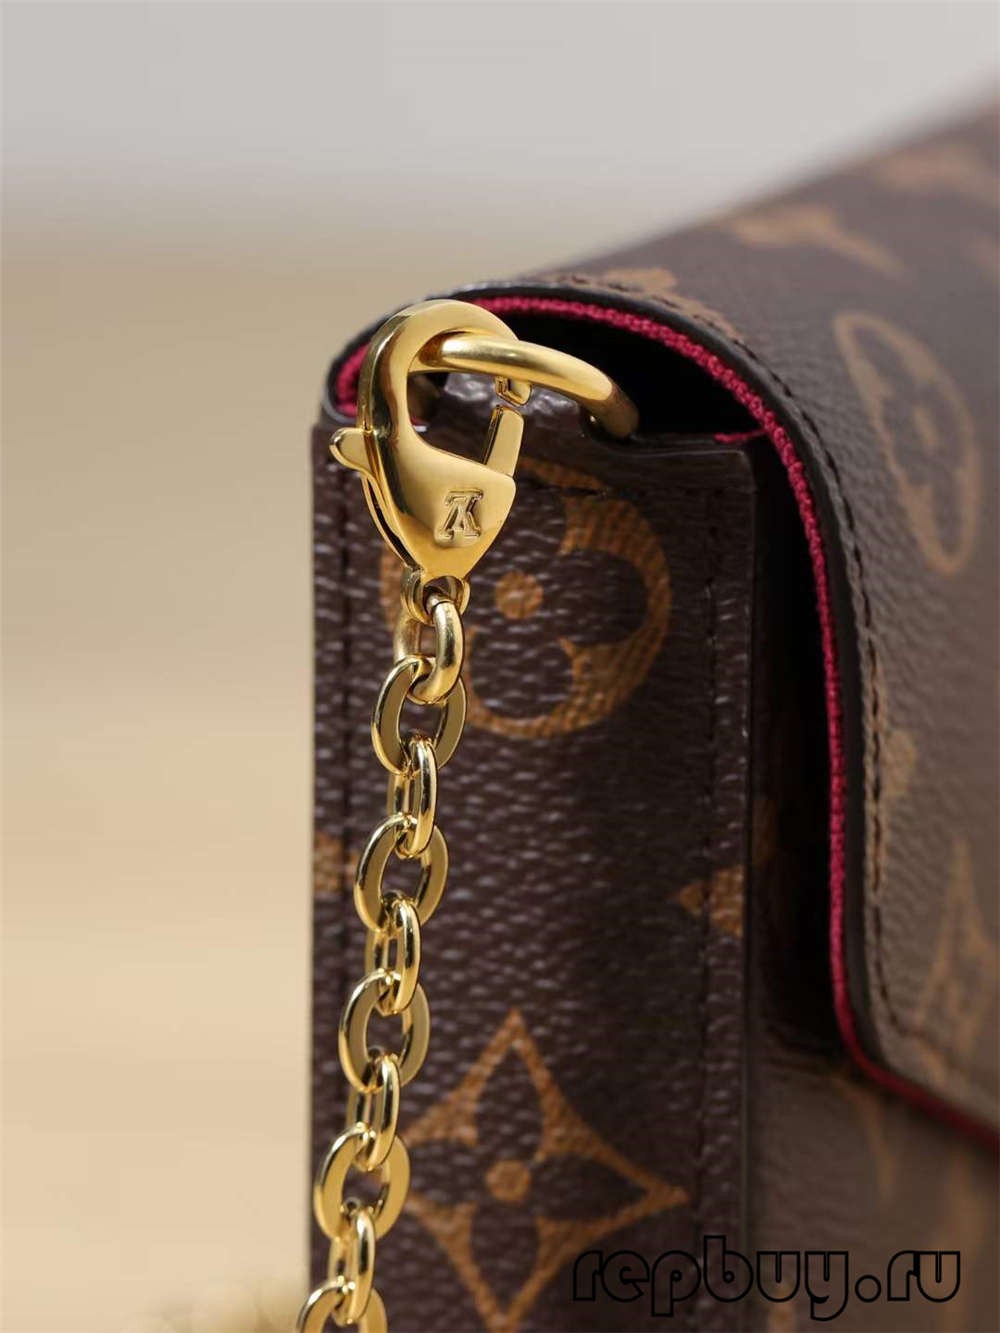 Louis Vuitton POCHETTE FÉLICIE replikaväskor av högsta kvalitet（2022 Senaste）-Bästa kvalitet Fake Louis Vuitton Bag Online Store, Replica designer bag ru